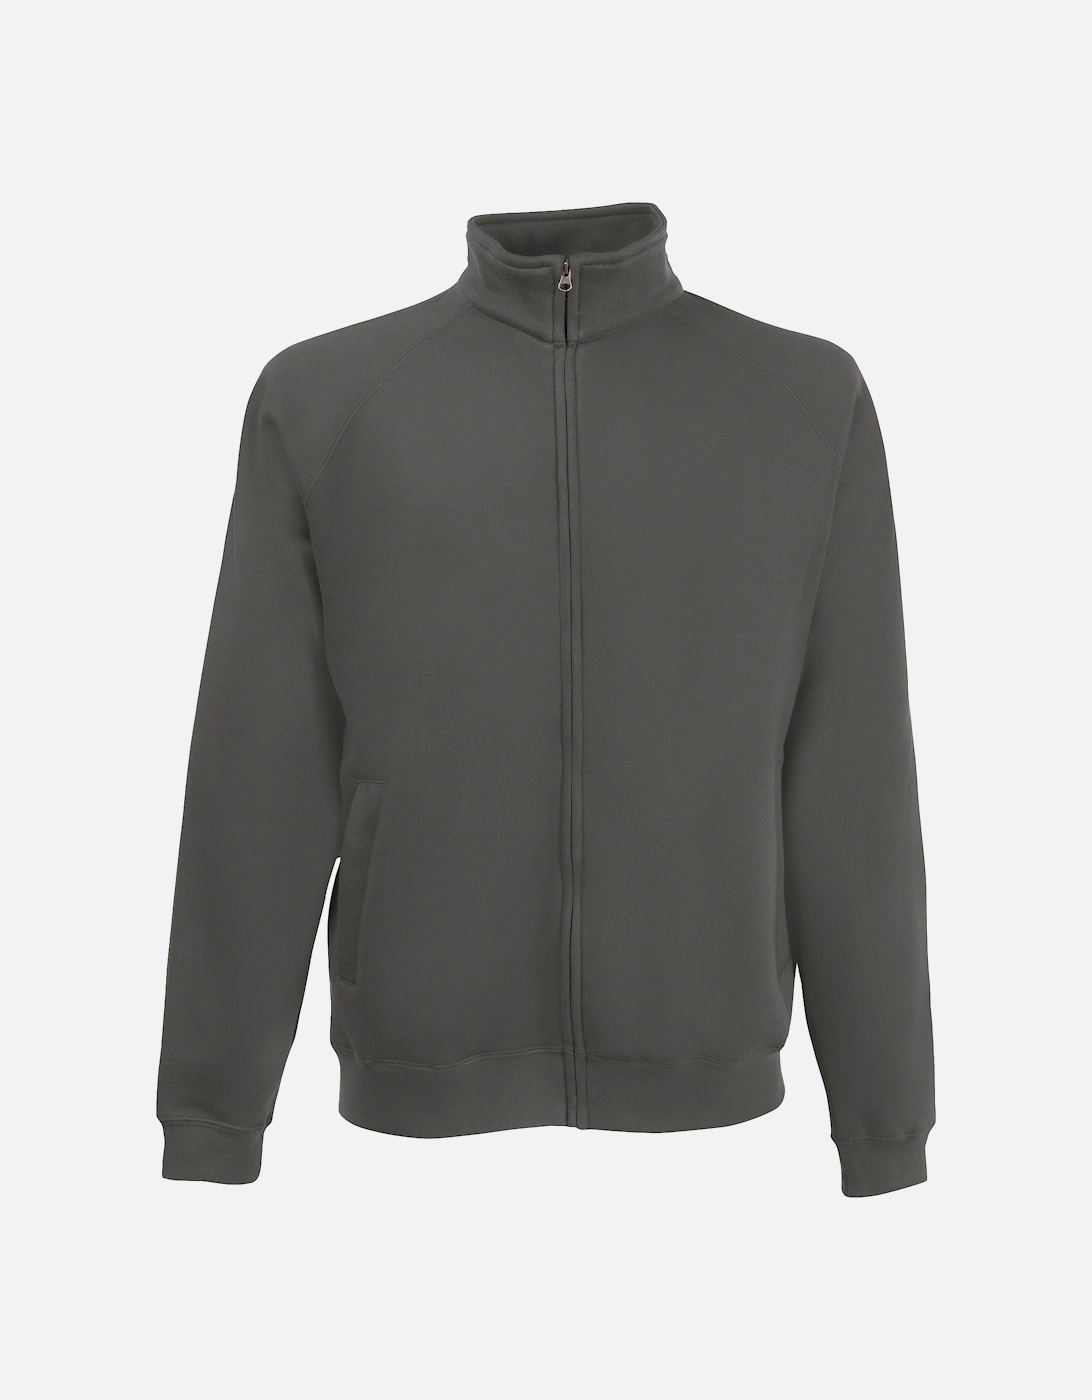 Mens Premium 70/30 Full Zip Sweatshirt Jacket, 3 of 2